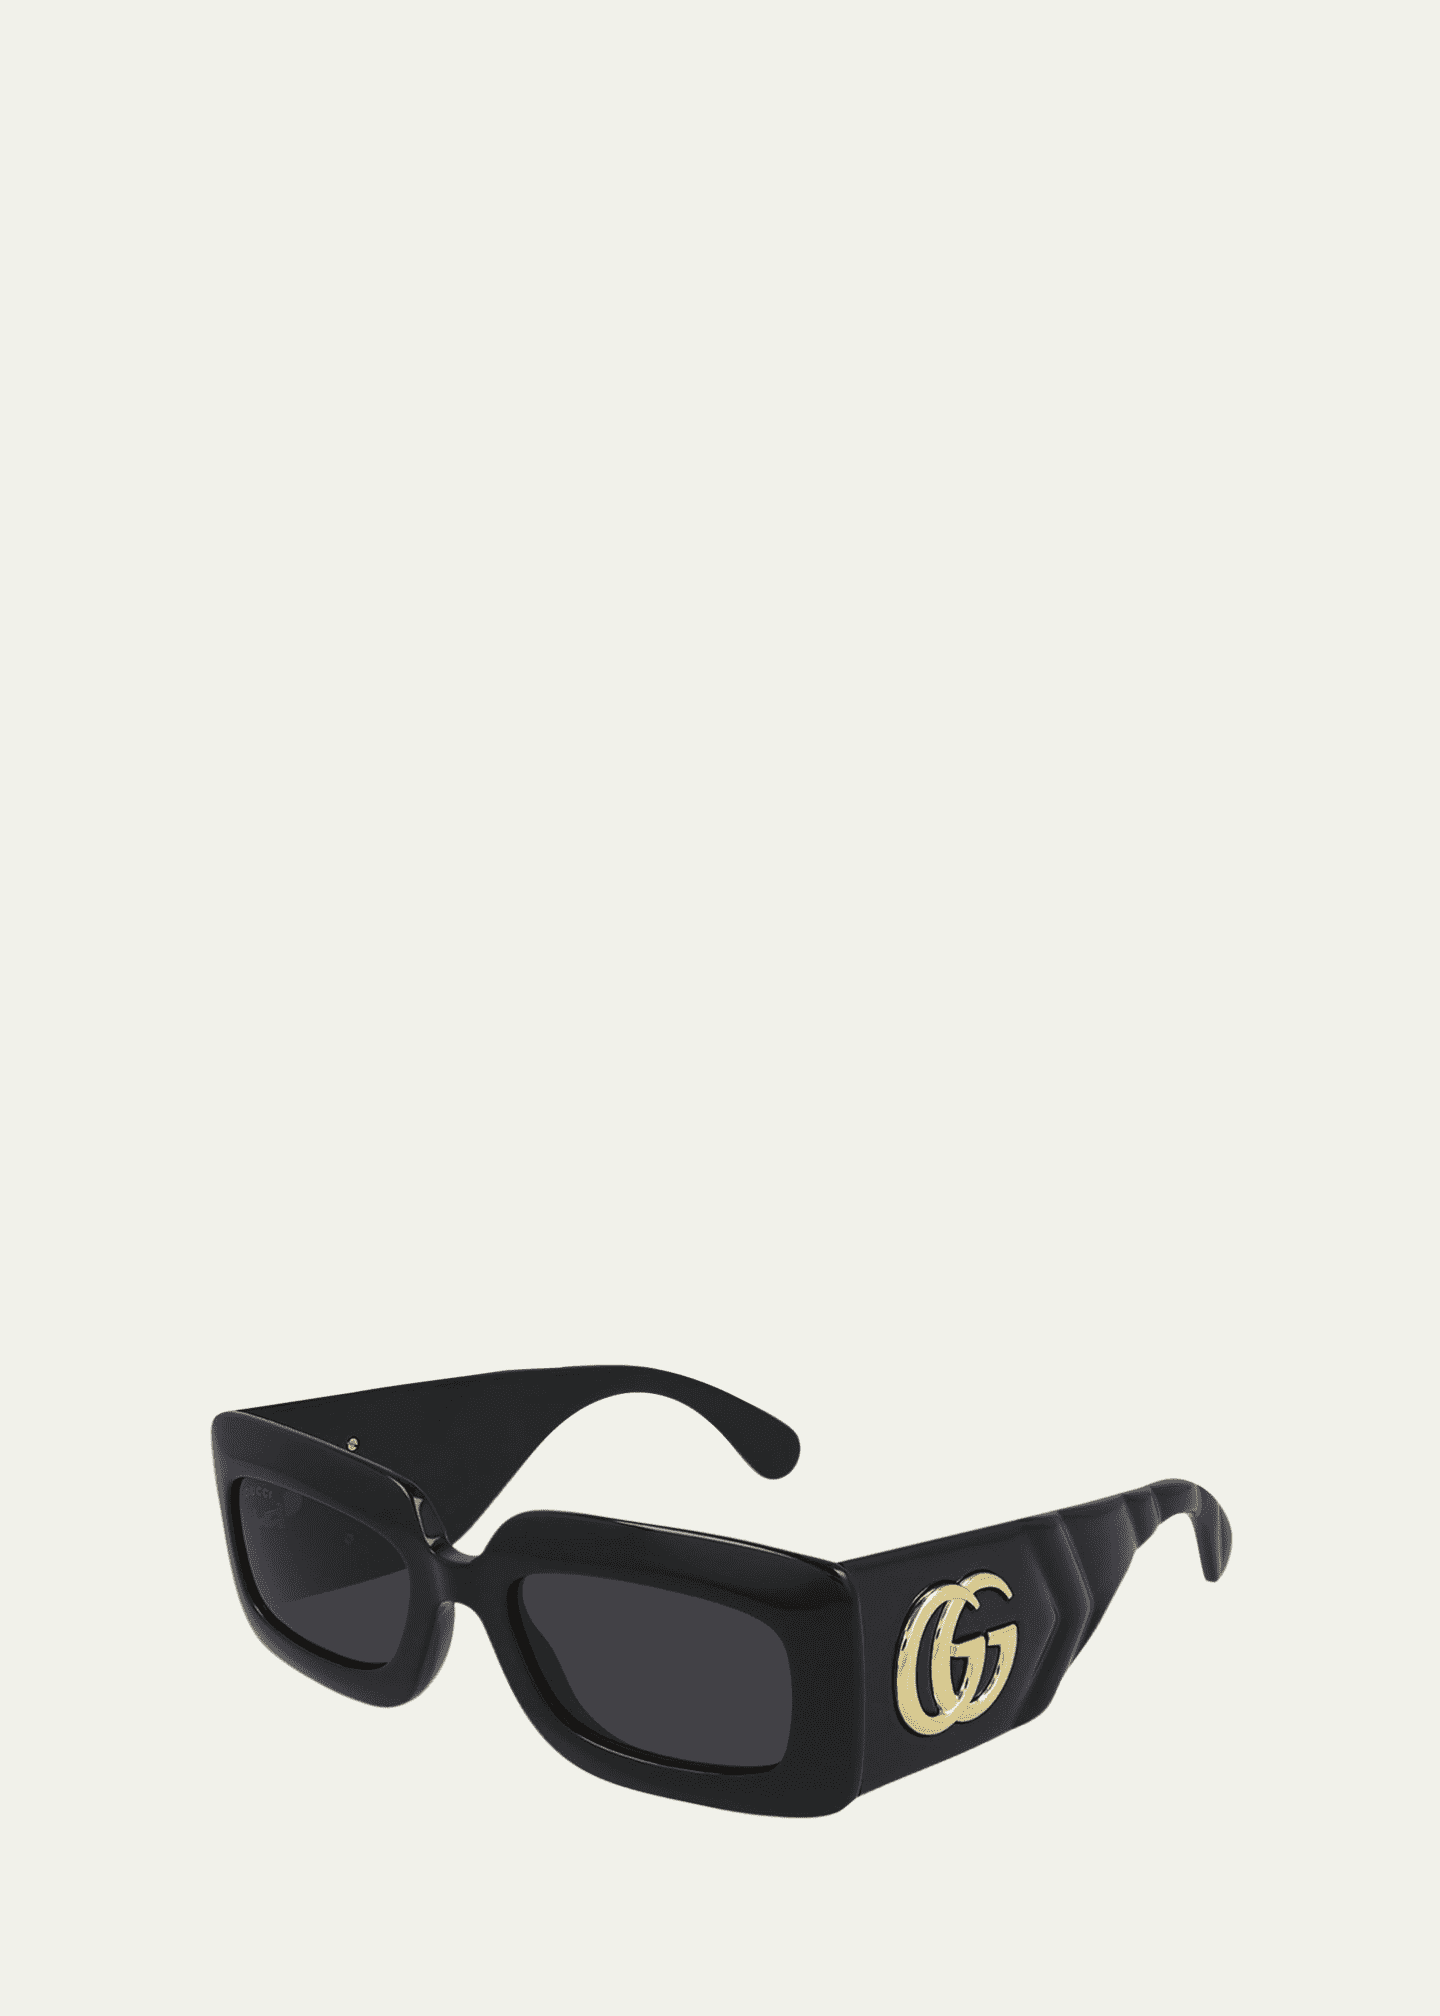 Square Sunglasses in Black - Gucci